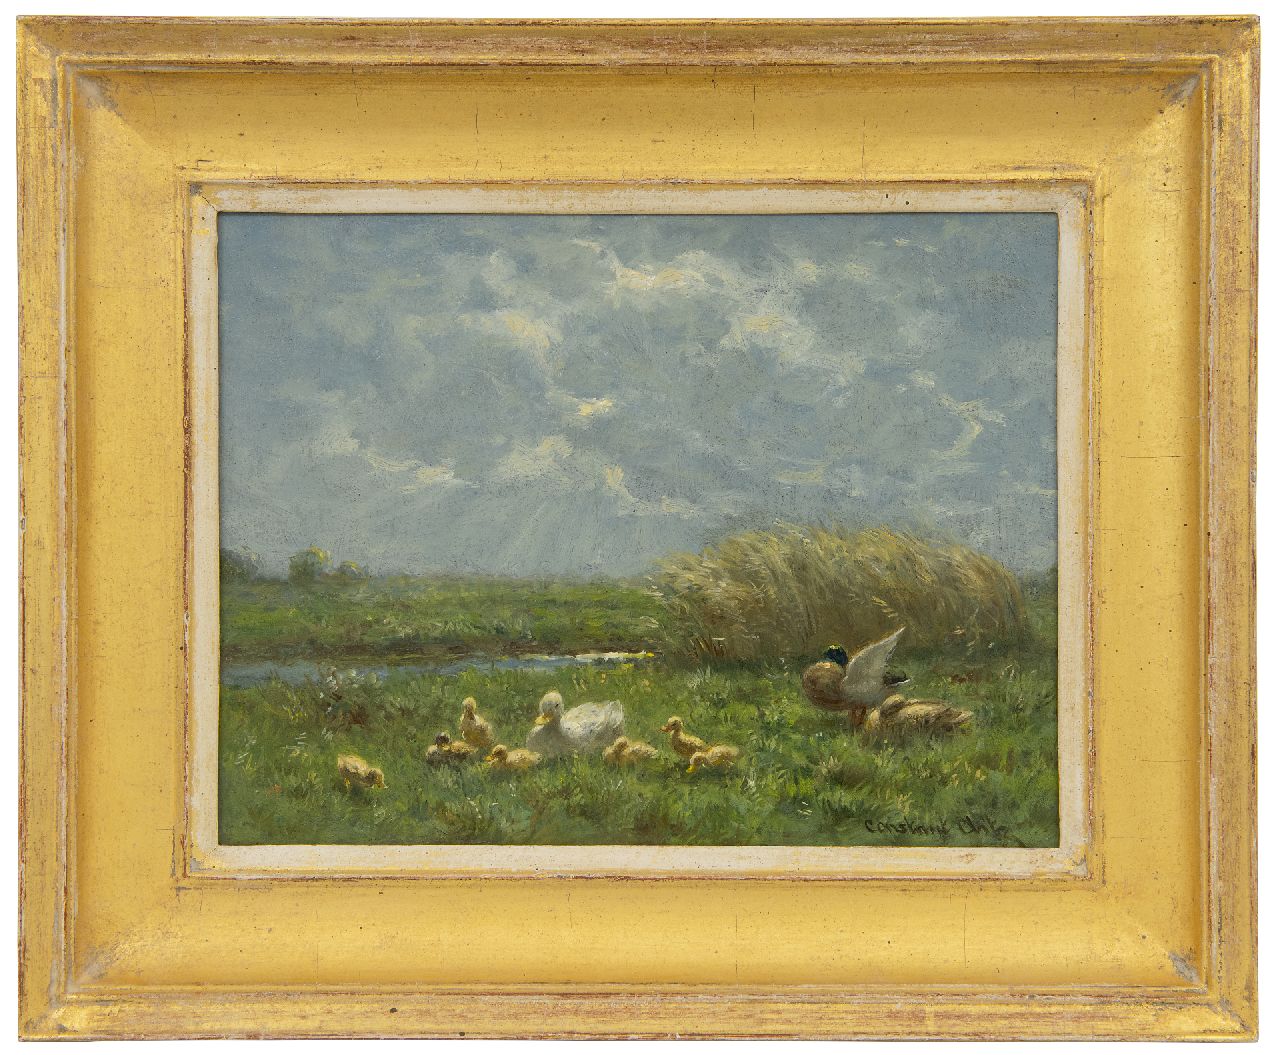 Artz C.D.L.  | 'Constant' David Ludovic Artz | Schilderijen te koop aangeboden | Eendenfamilie in een polderlandschap, olieverf op paneel 18,1 x 24,1 cm, gesigneerd rechtsonder